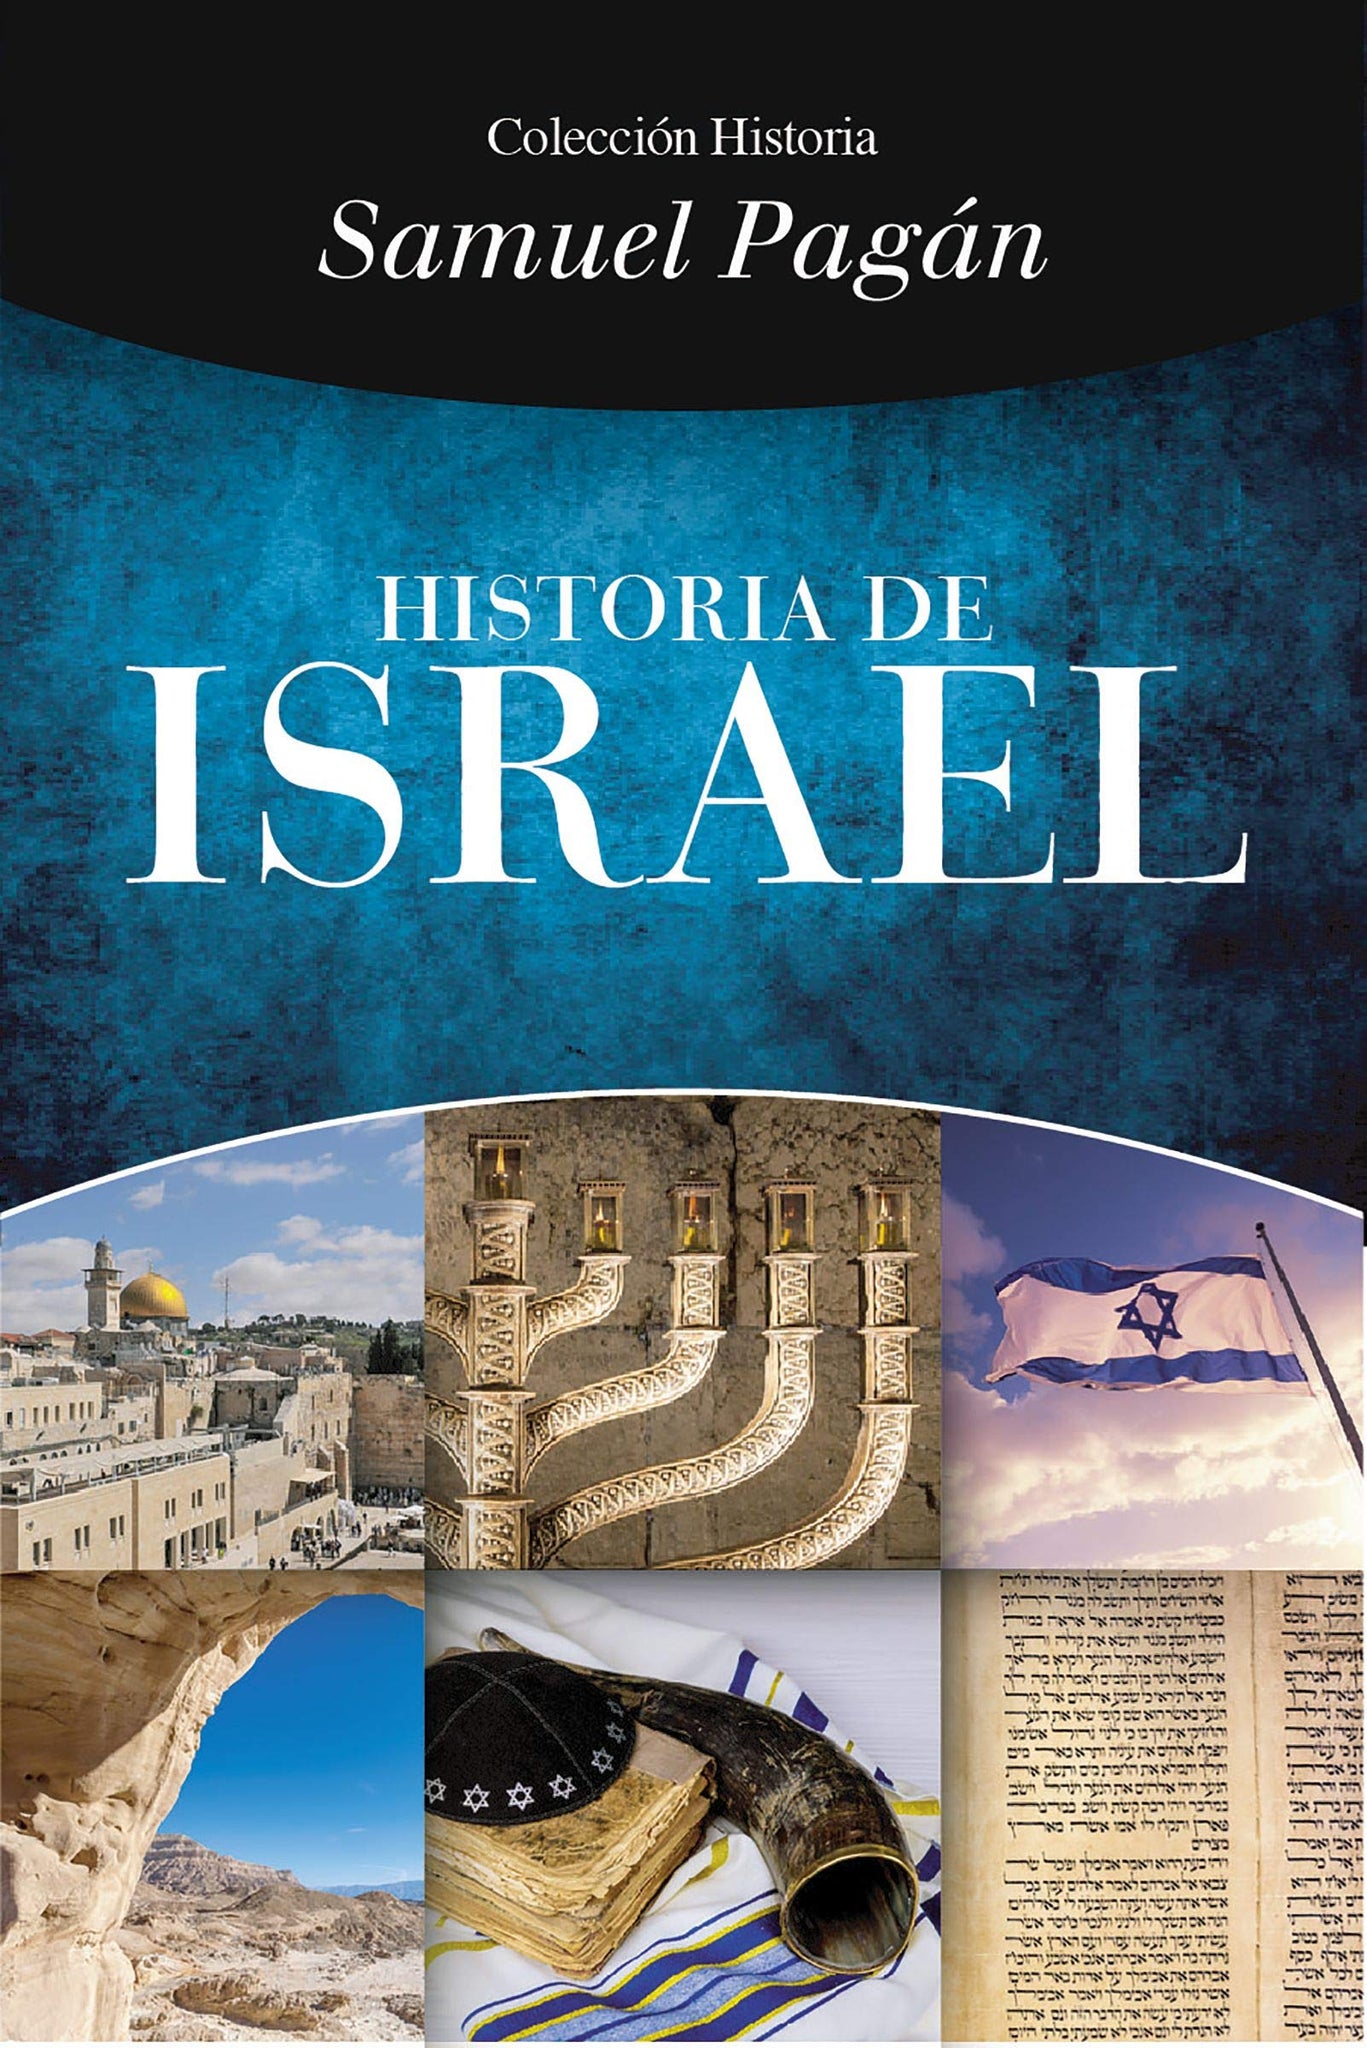 Historia del Israel Bíblico